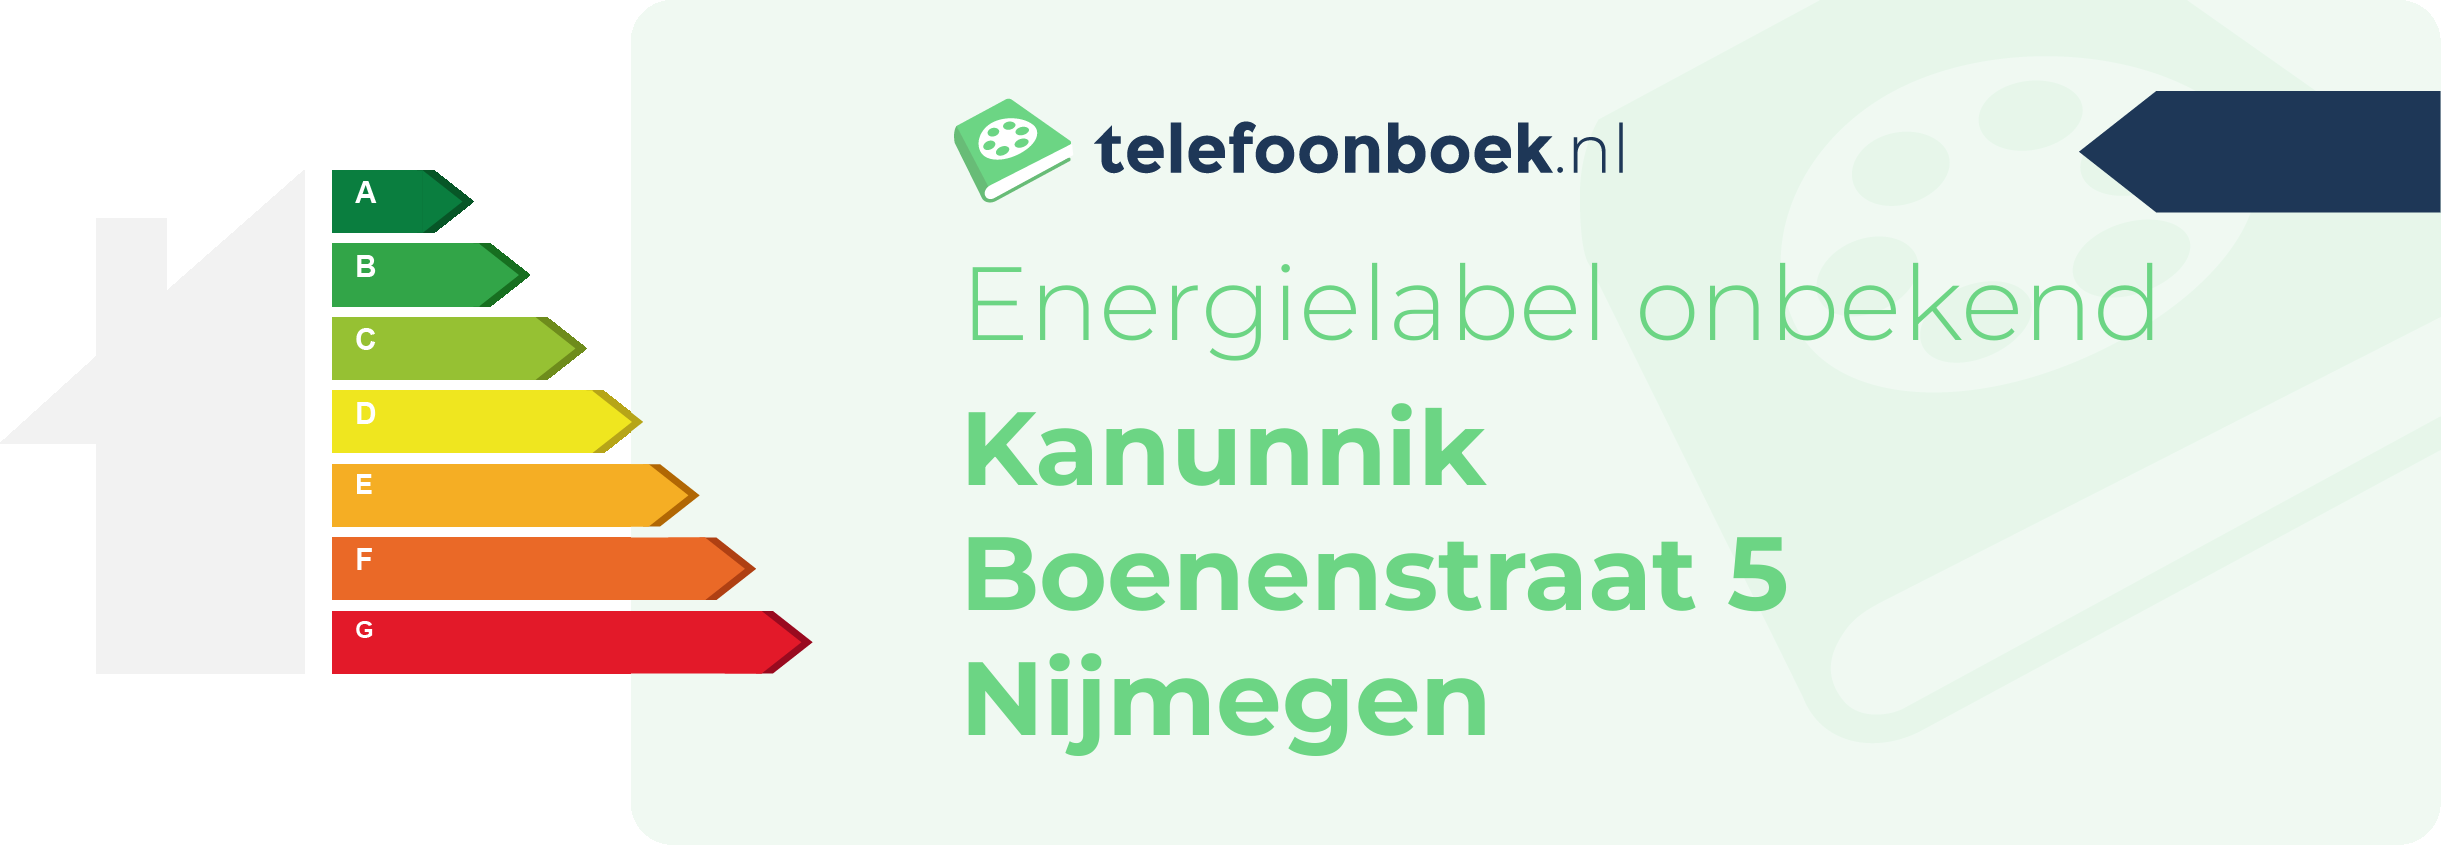 Energielabel Kanunnik Boenenstraat 5 Nijmegen